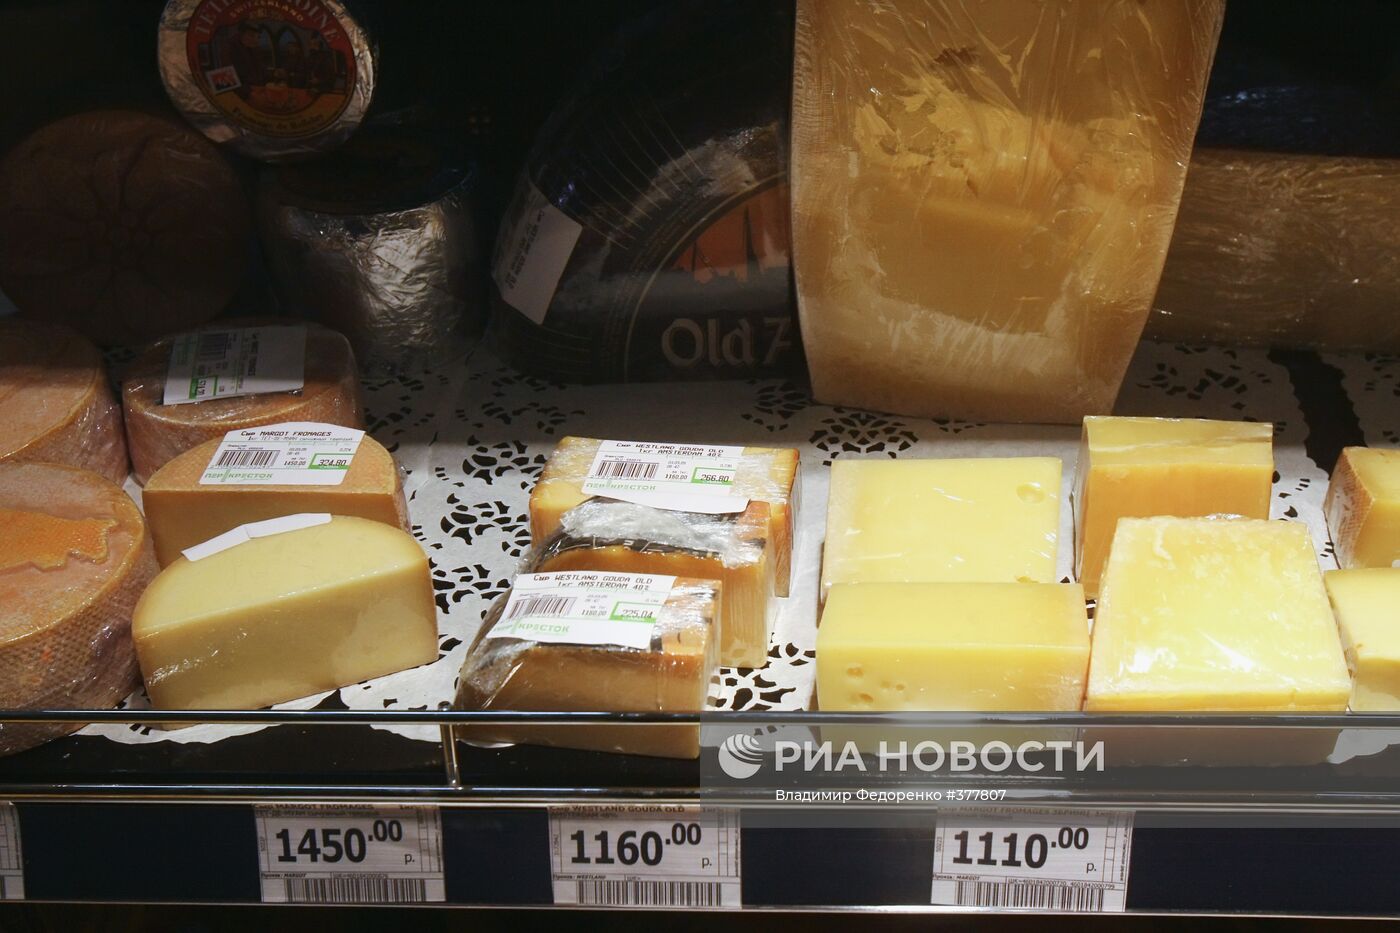 Открытие первого супермаркета "Зеленый Перекресток" в Москве